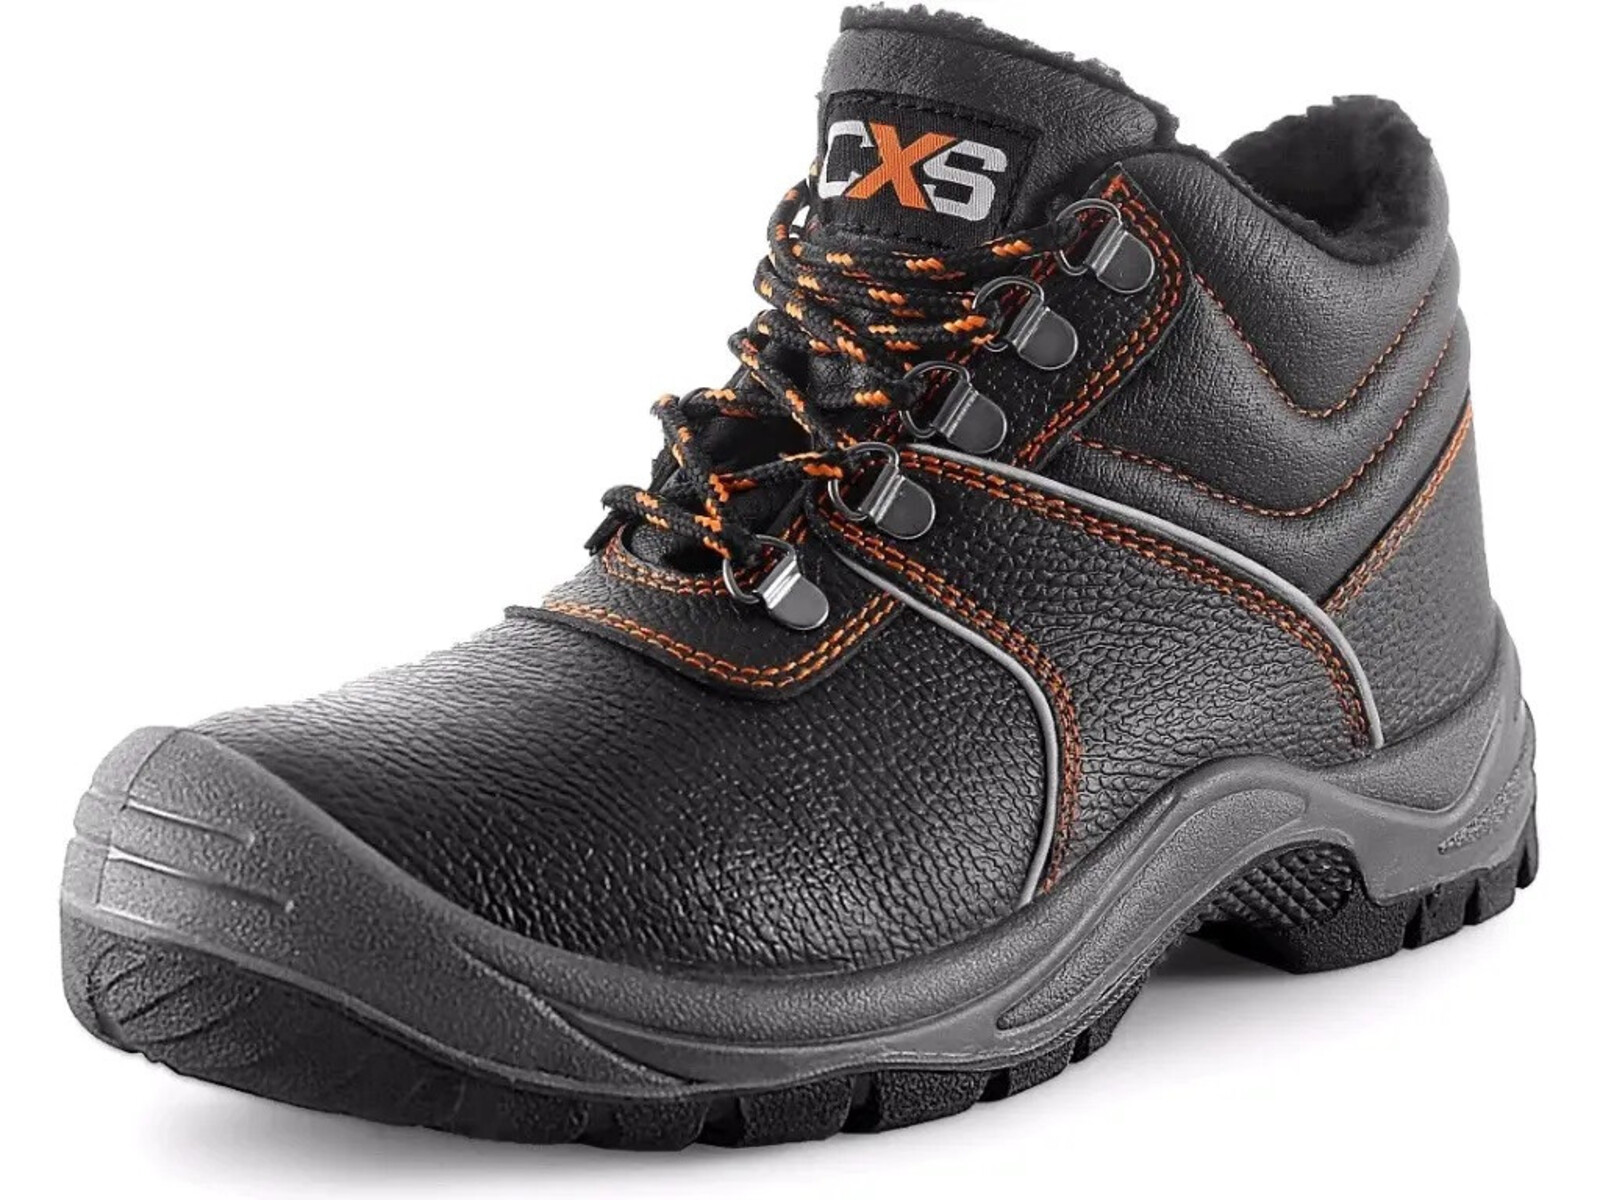 Zimná pracovná členková obuv CXS Stone Apatit Winter O2 FO SRC - veľkosť: 42, farba: čierna/oranžová